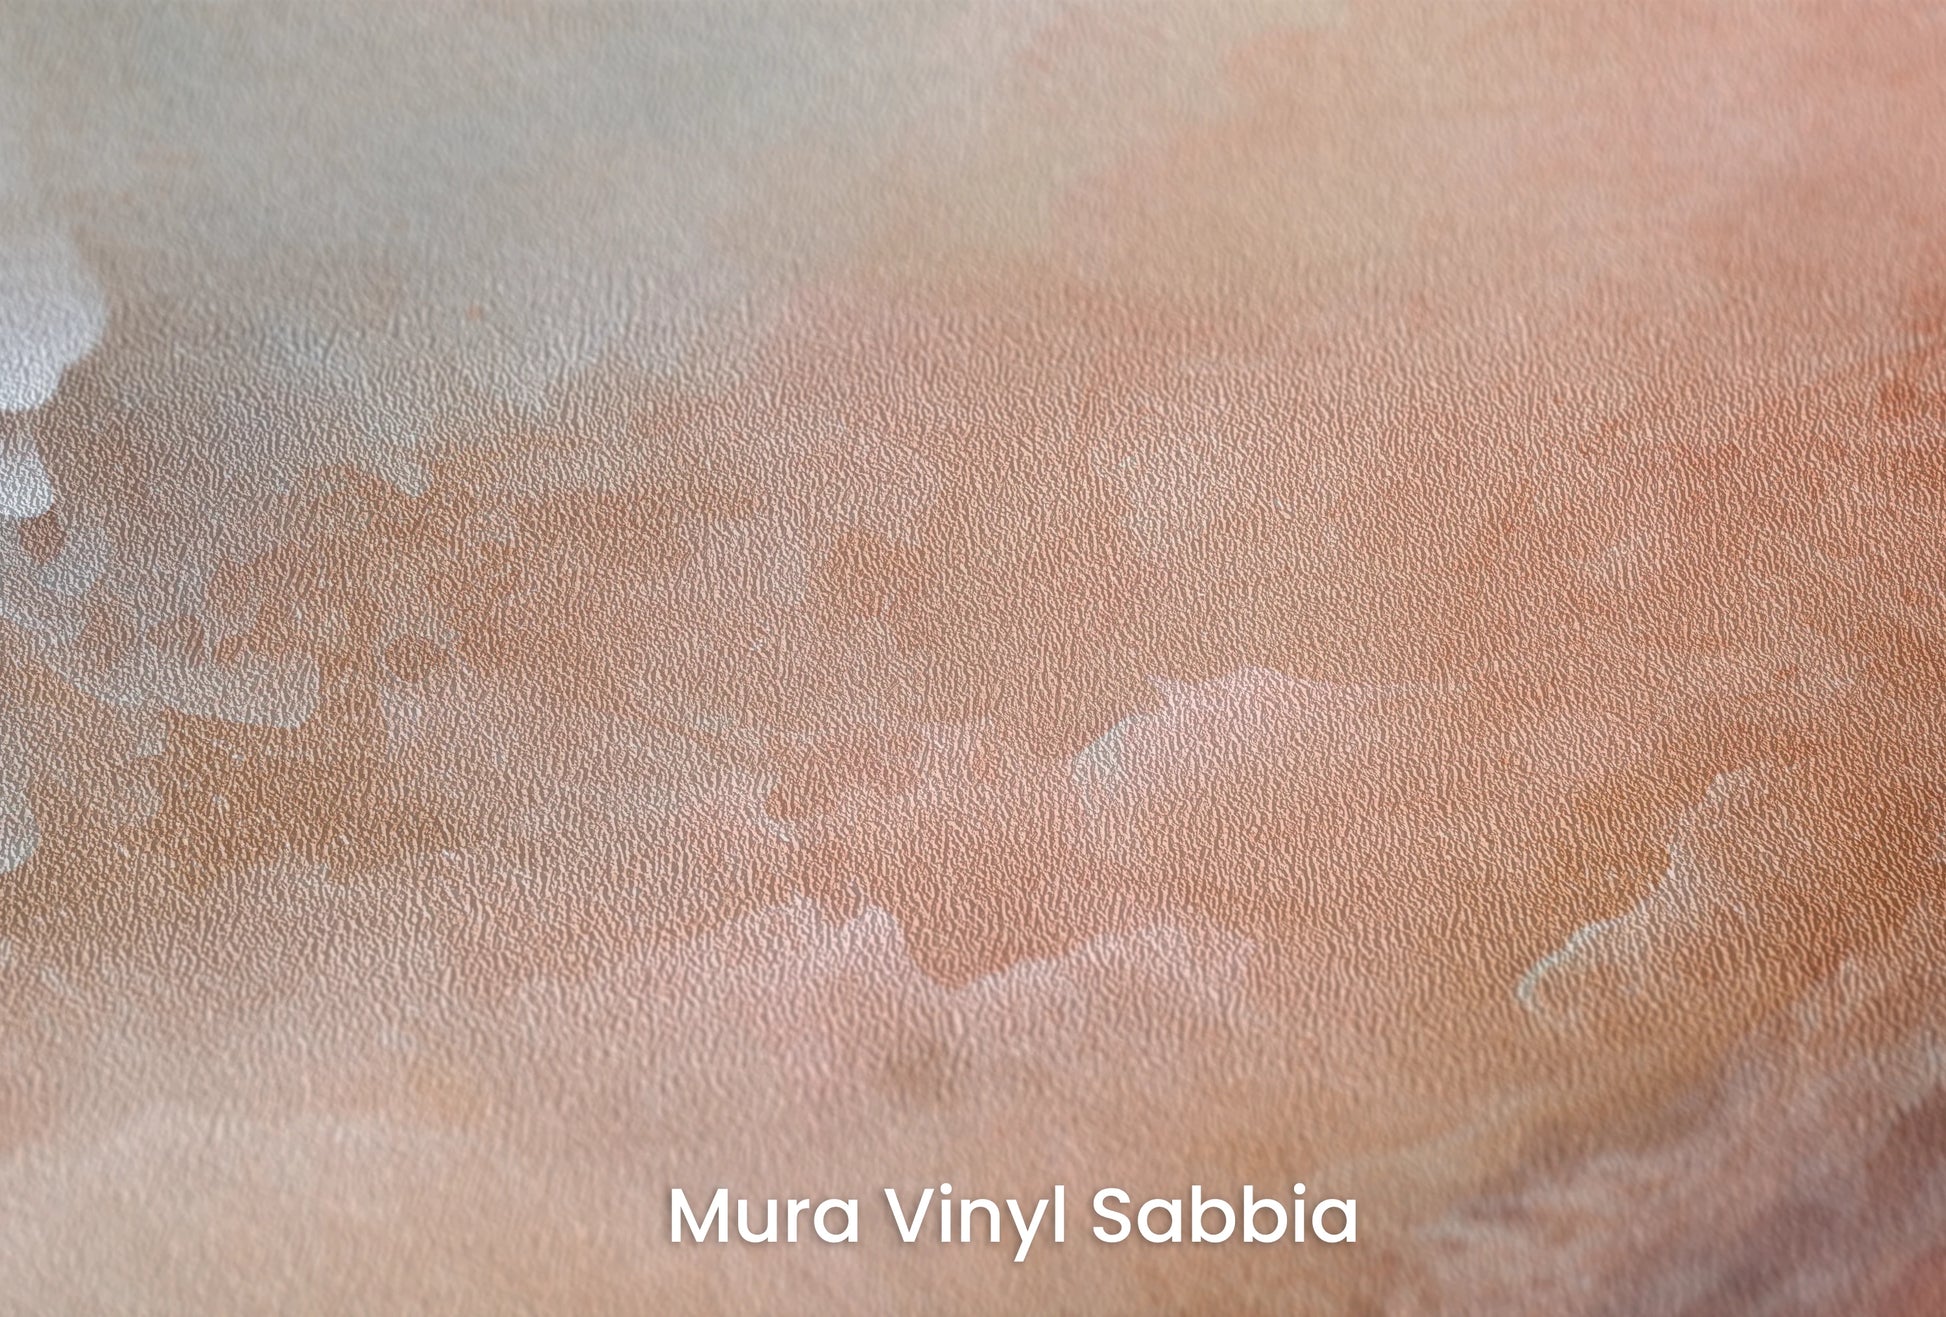 Zbliżenie na artystyczną fototapetę o nazwie Lunar Silence na podłożu Mura Vinyl Sabbia struktura grubego ziarna piasku.